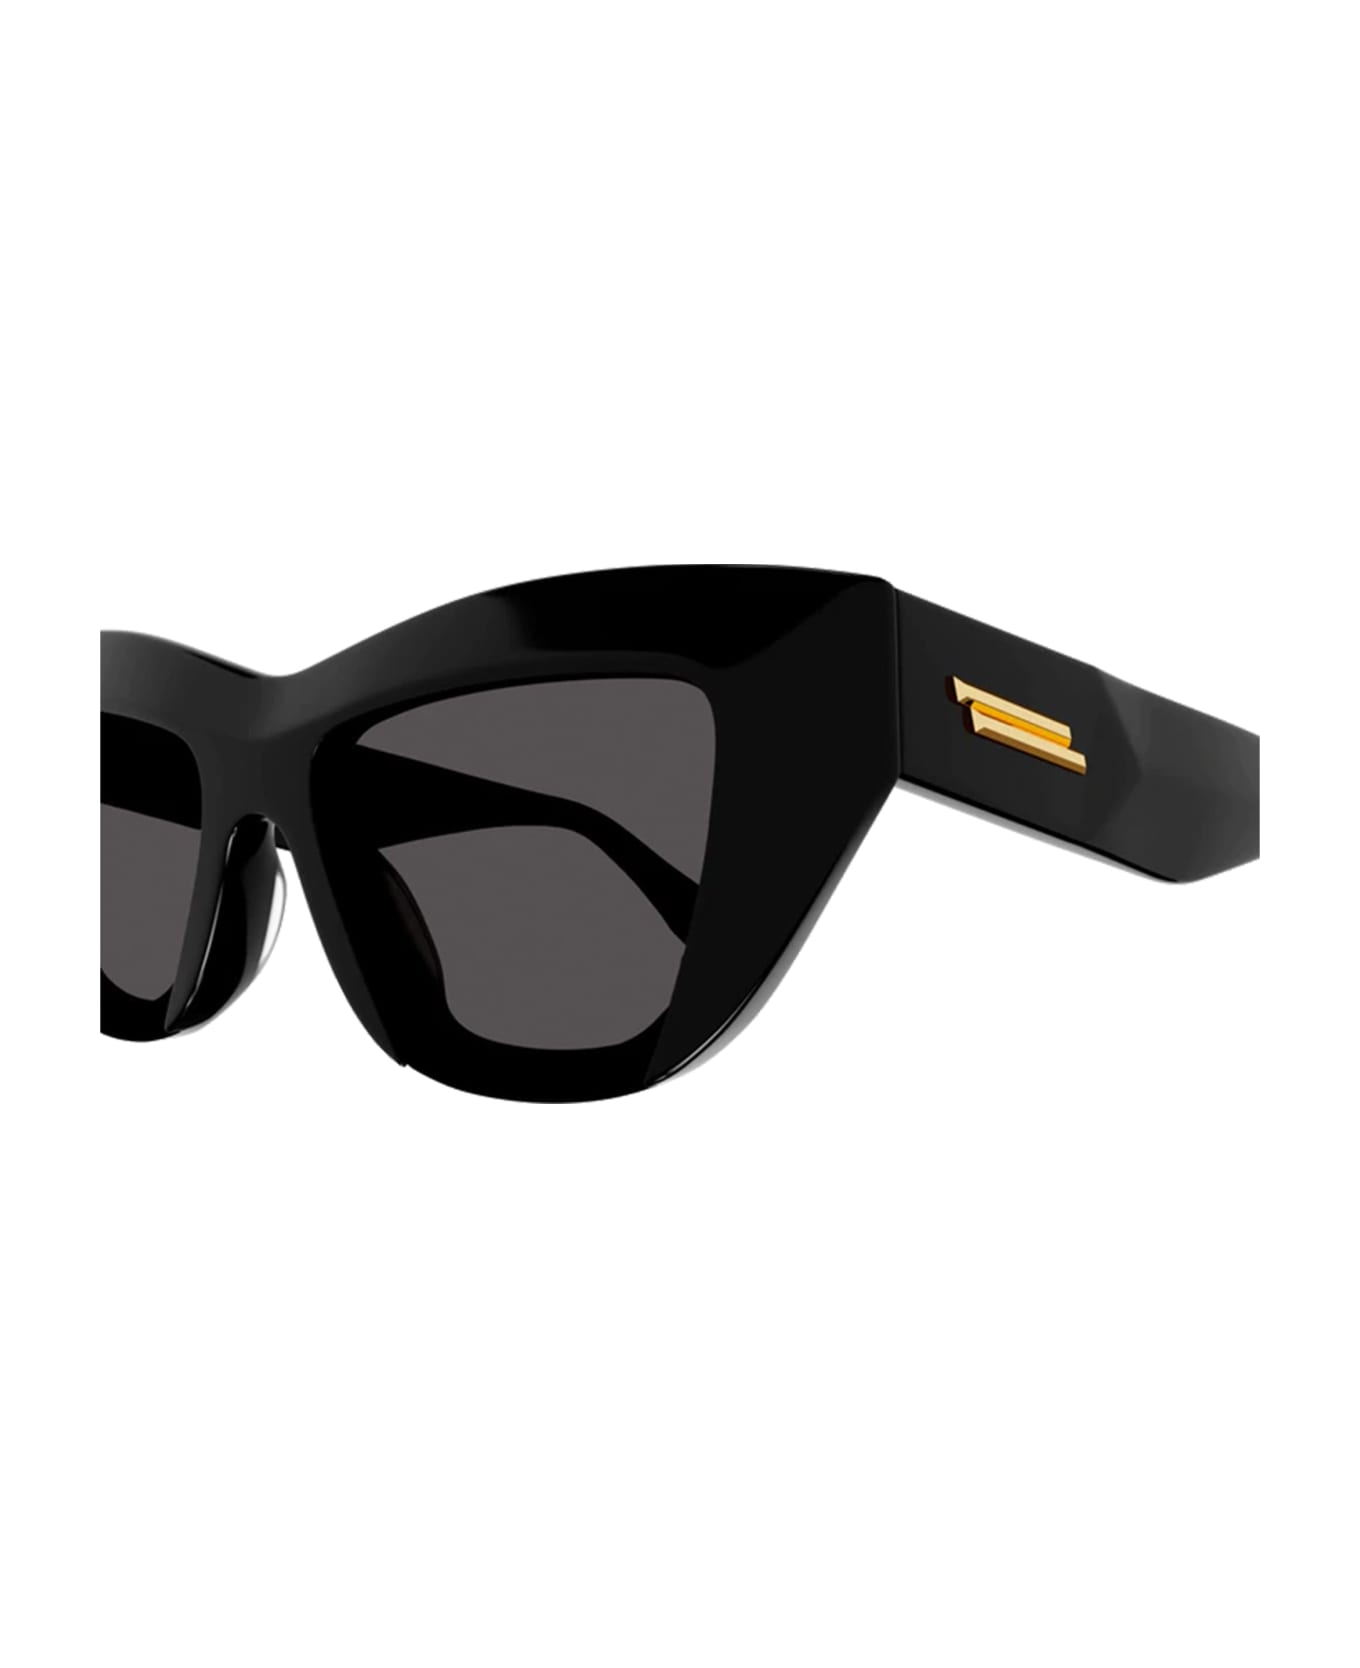 Bottega Veneta Eyewear Bv1118s-001 - Black Sunglasses - Black